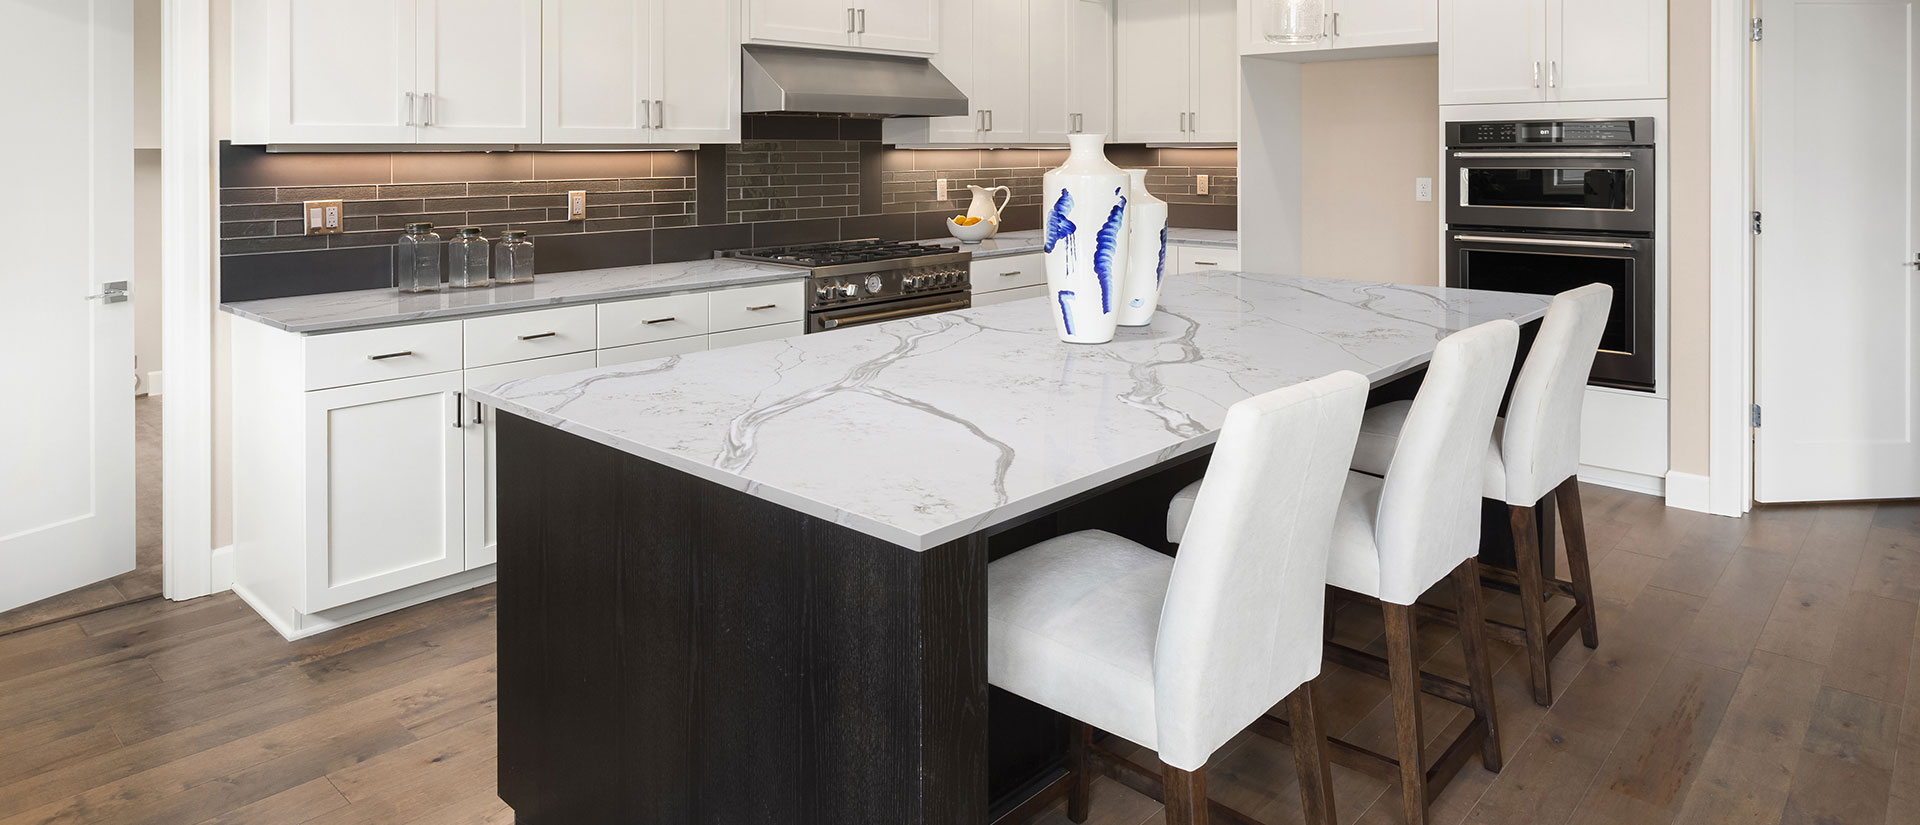 Calacatta Bolina quartz countertop in a minimalist kitchen with white cabinets